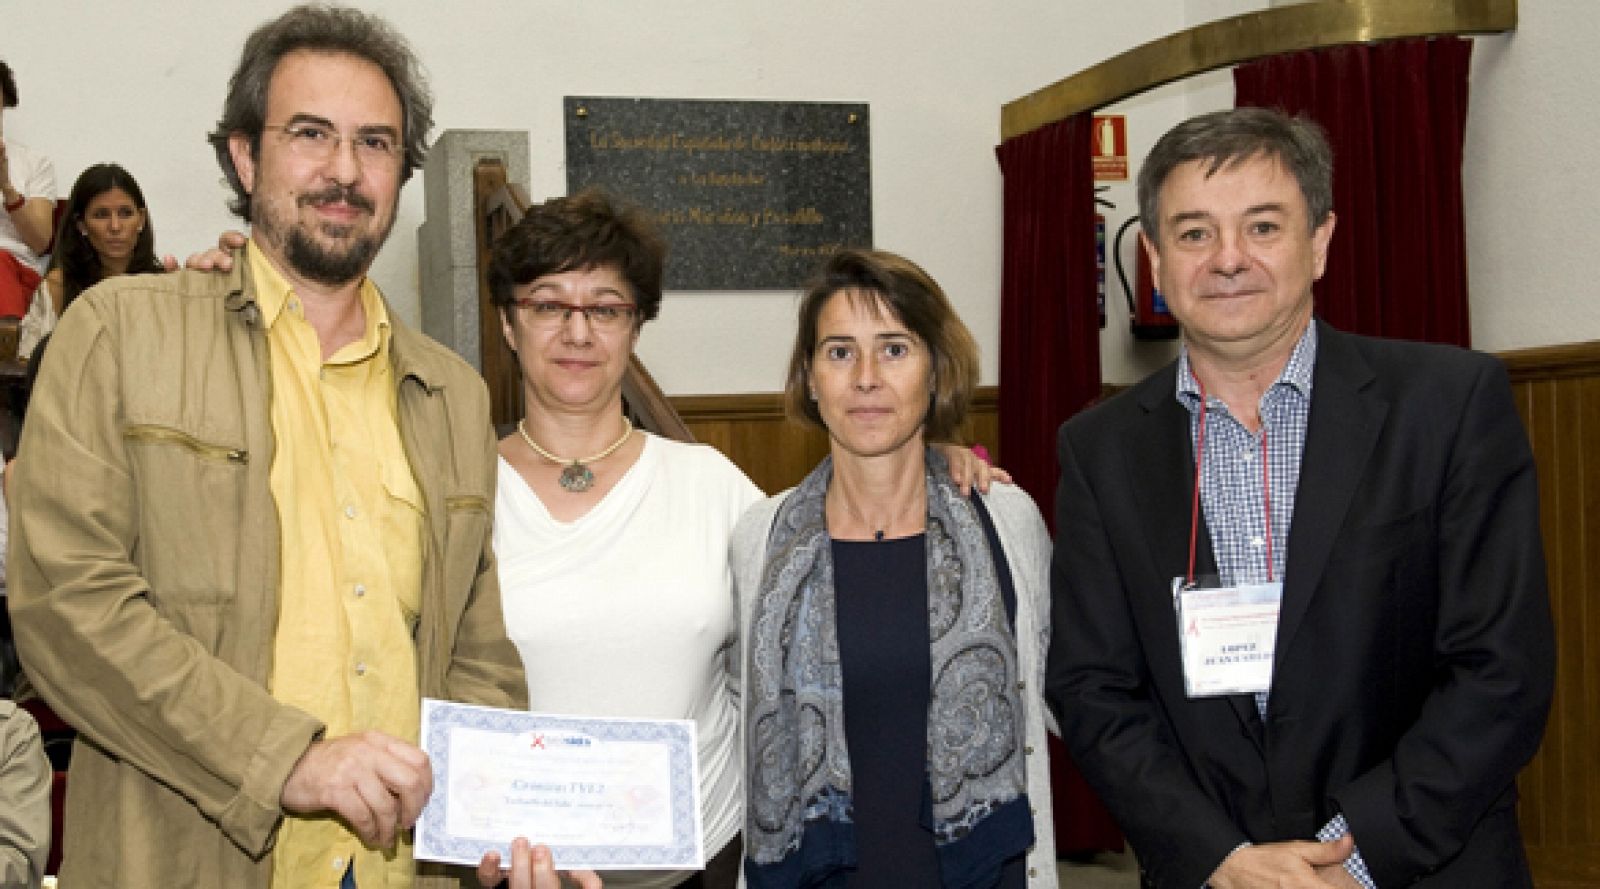 El equipo de Crónicas con el diploma acreditativo del Premio de Periodismo SEISIDA